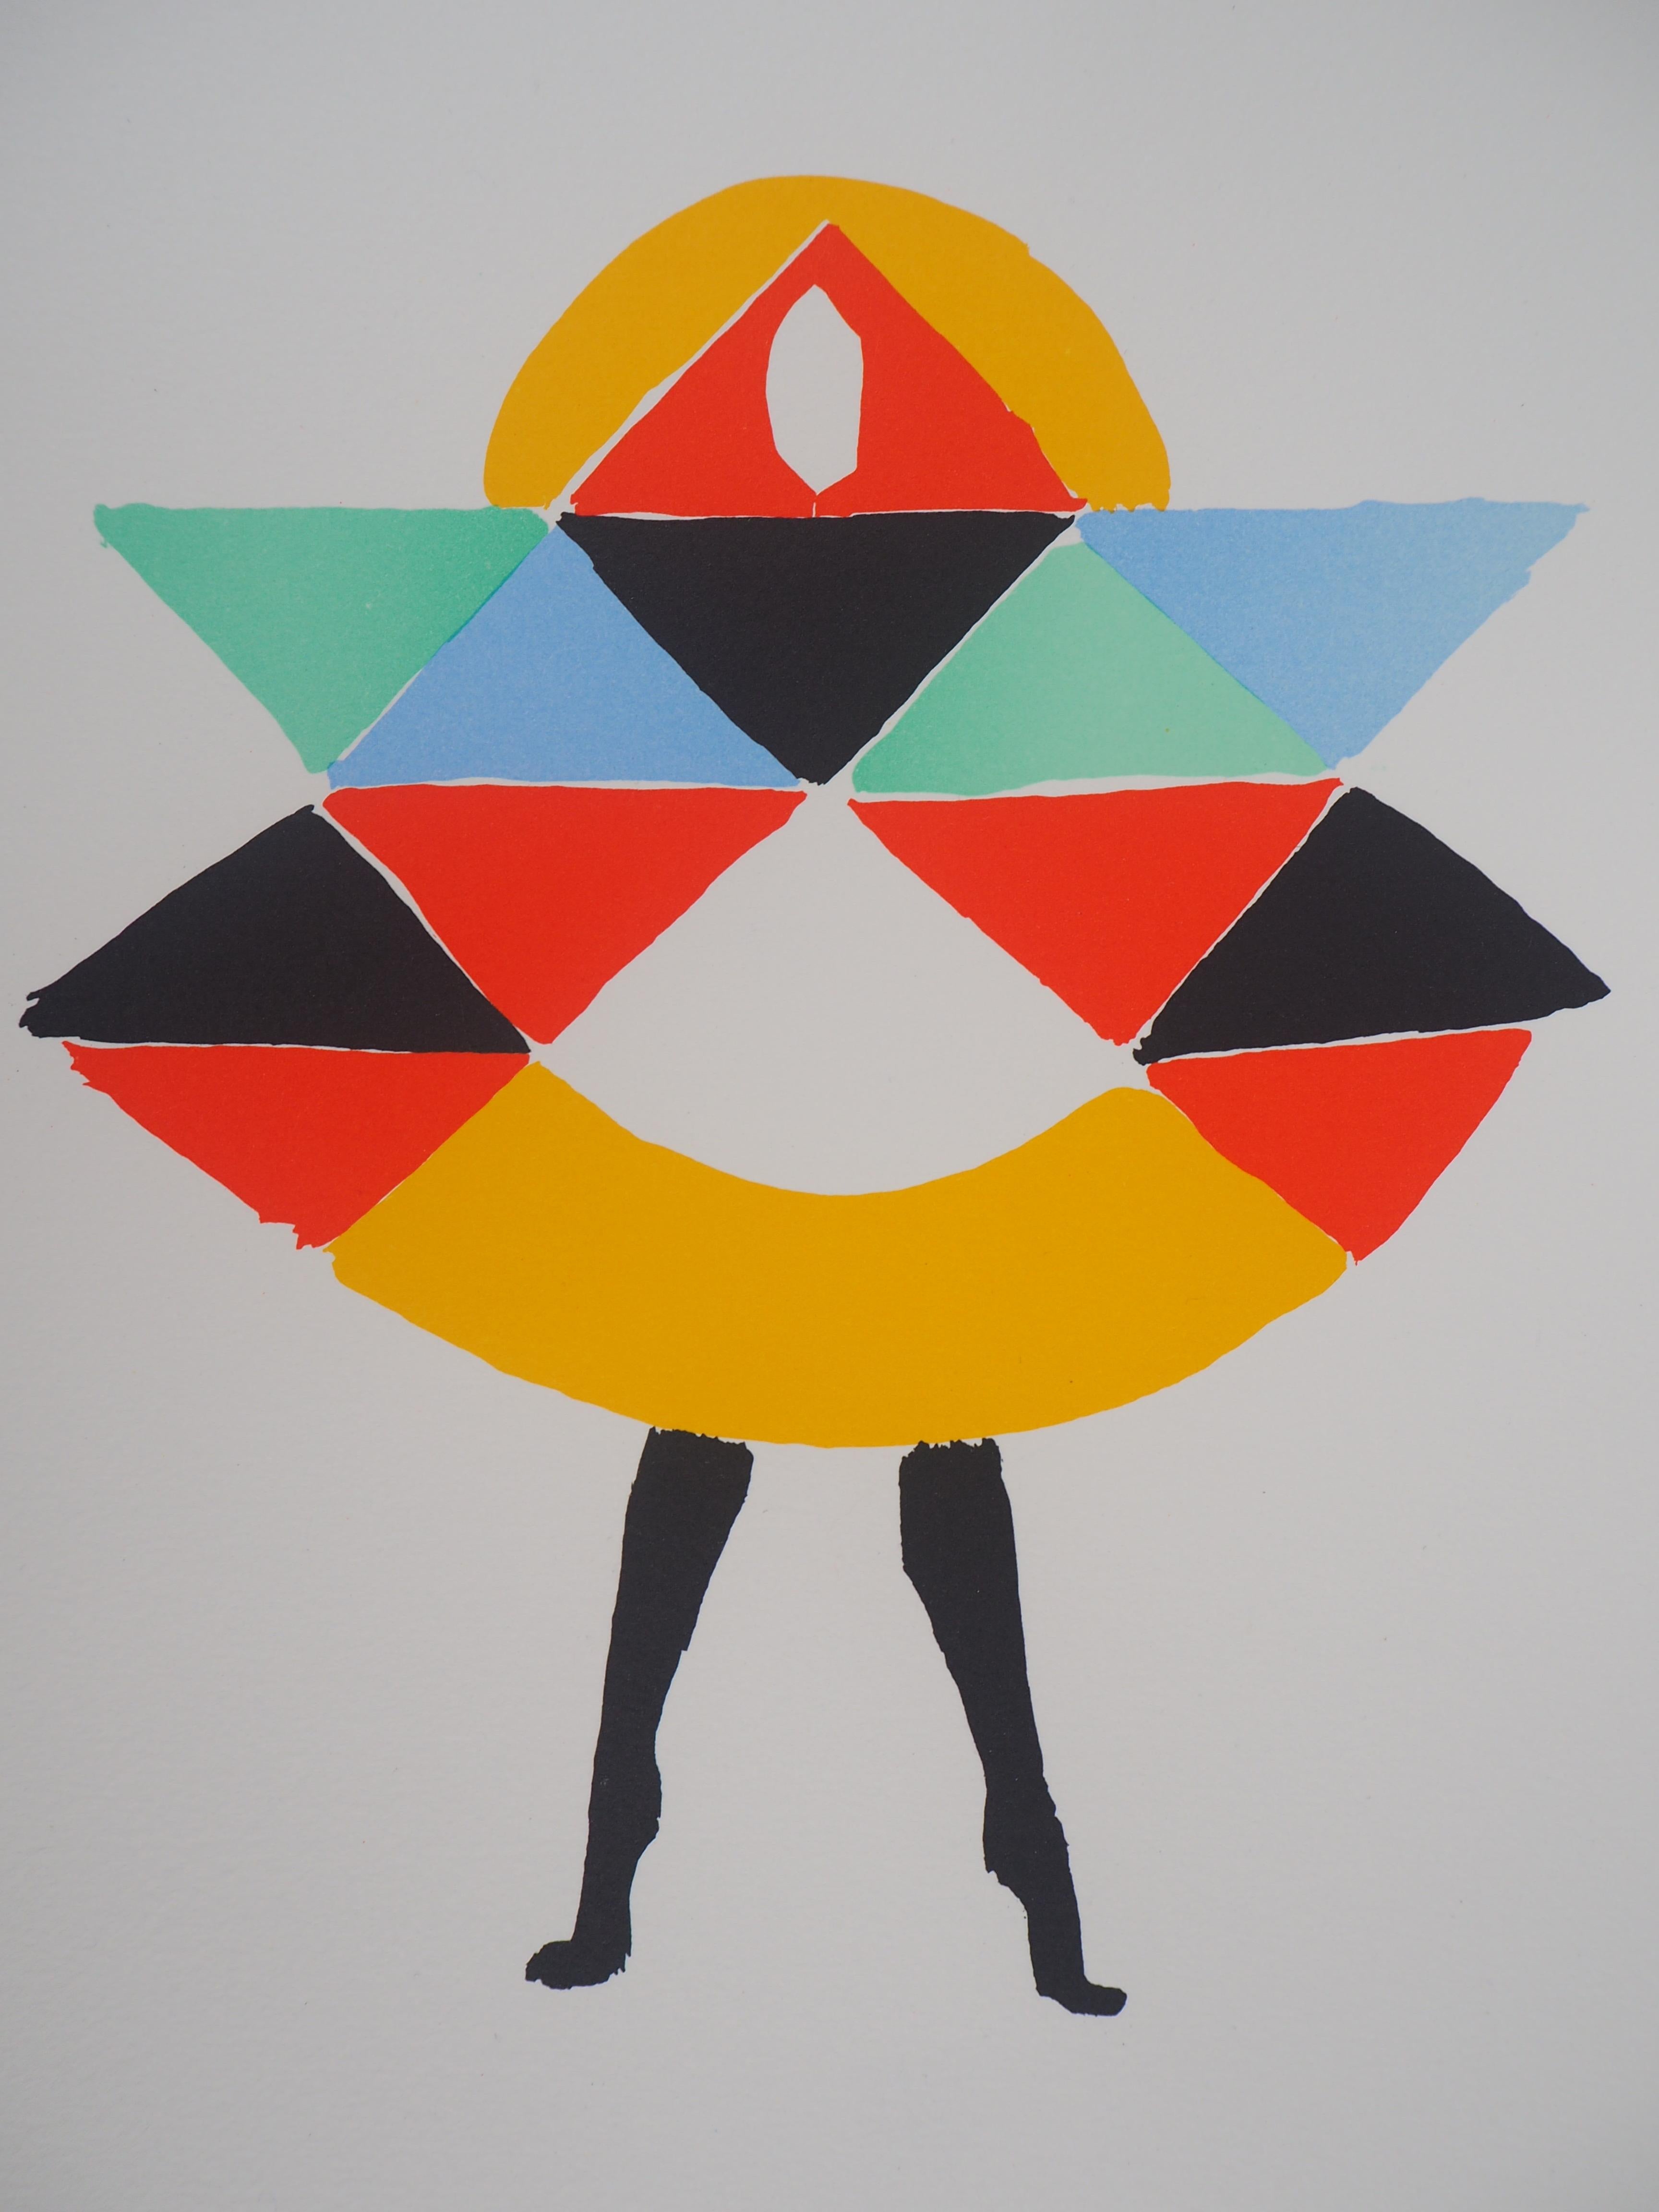 Sonia DELAUNAY
Robe de carnaval

Lithographie d'après une peinture
Signature imprimée dans la plaque
Numéroté /600 
Sur vélin d'Arches 40 x 30 cm (environ 15,7 x 11,8 in)
Edition Artcurial, 1994

Excellent état